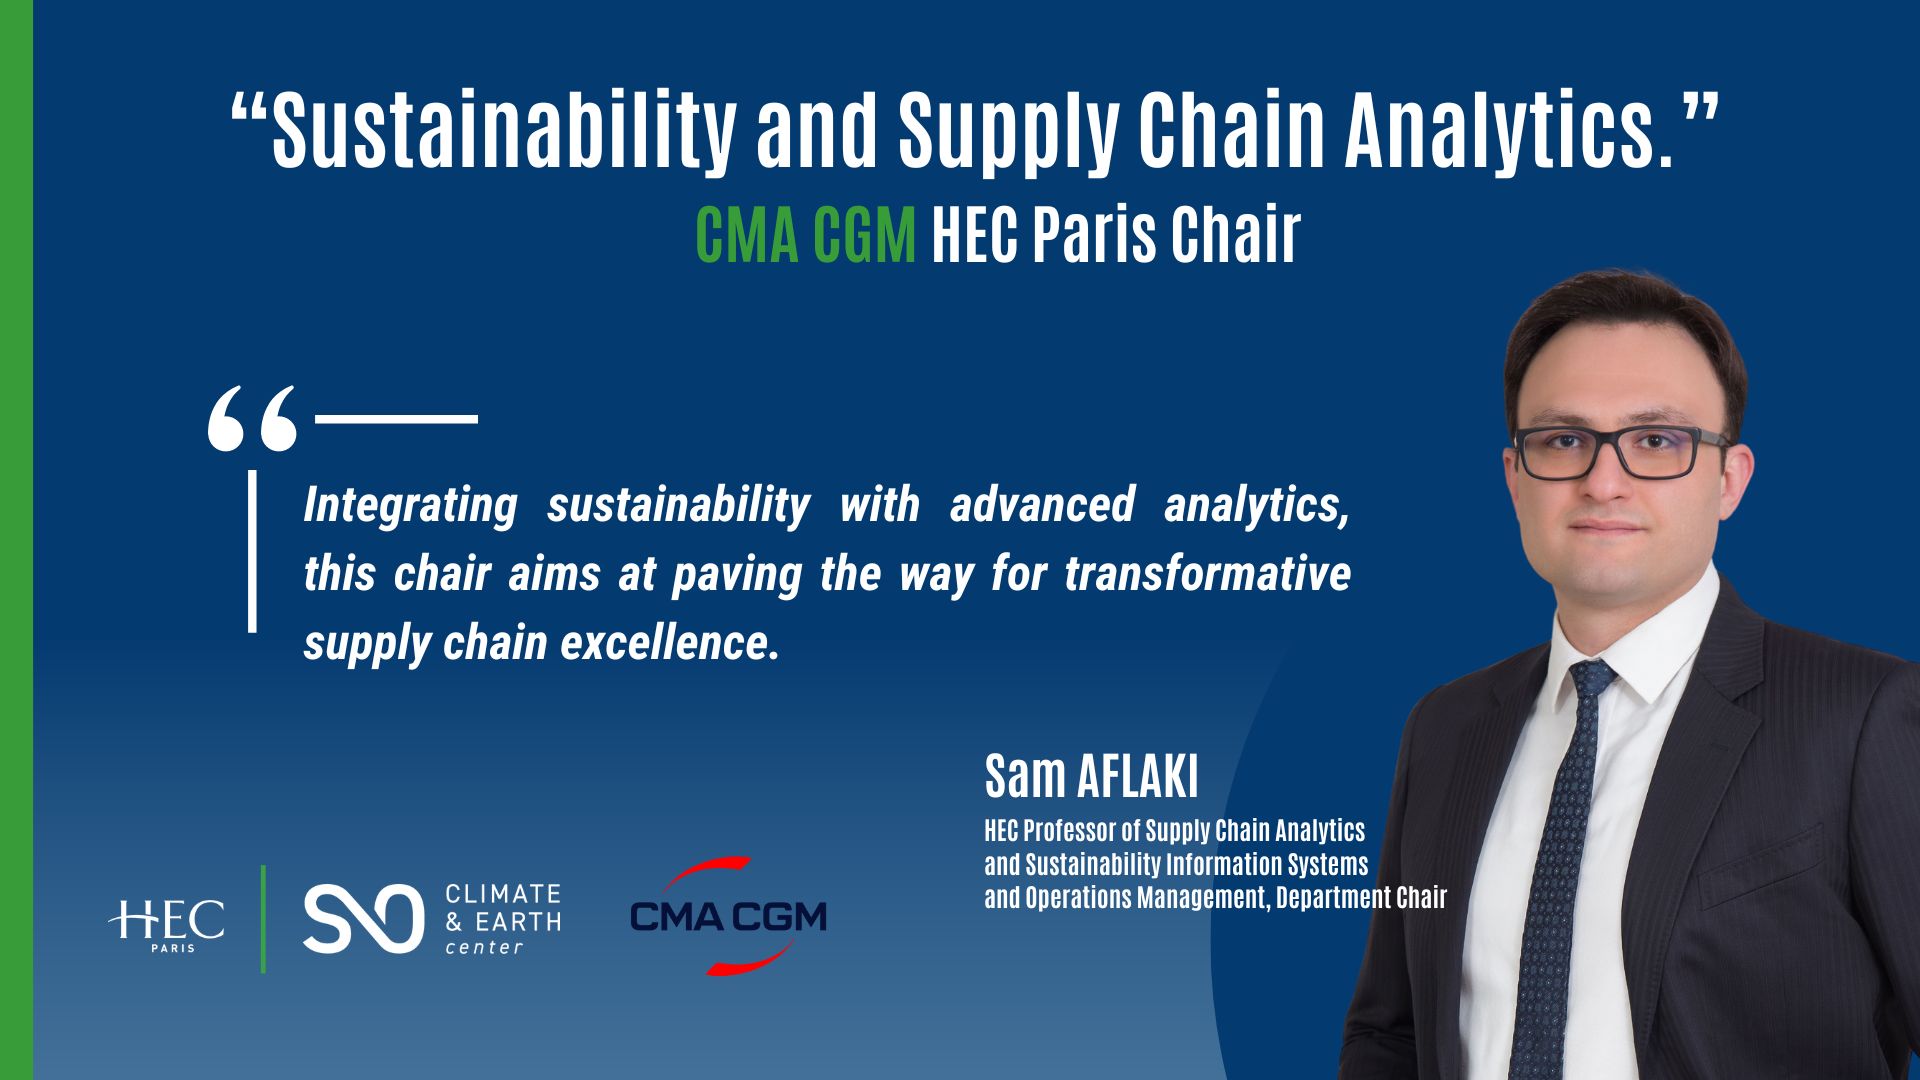 HEC Prof. Sam Aflaki quote about HEC Paris CMA CGM' Chair